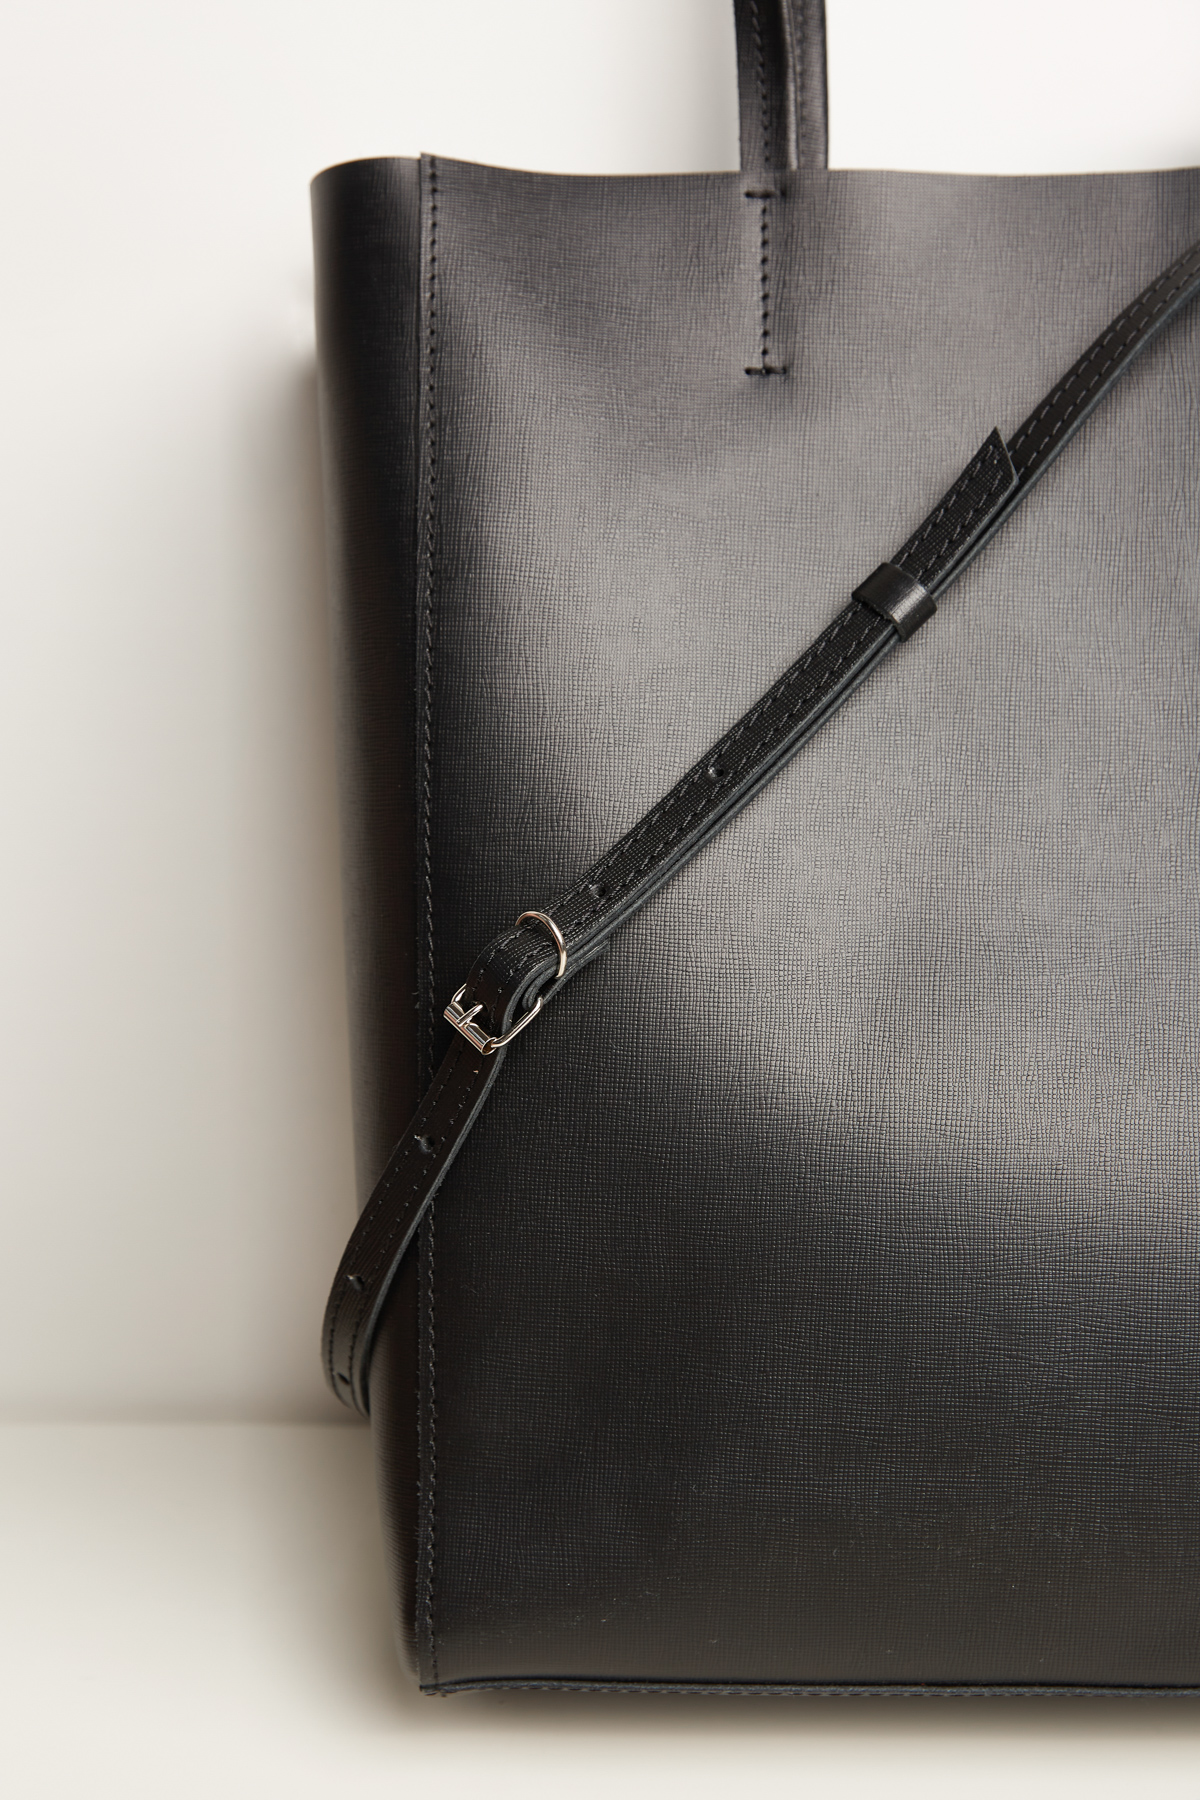 Black leather shopping bag, photo 3